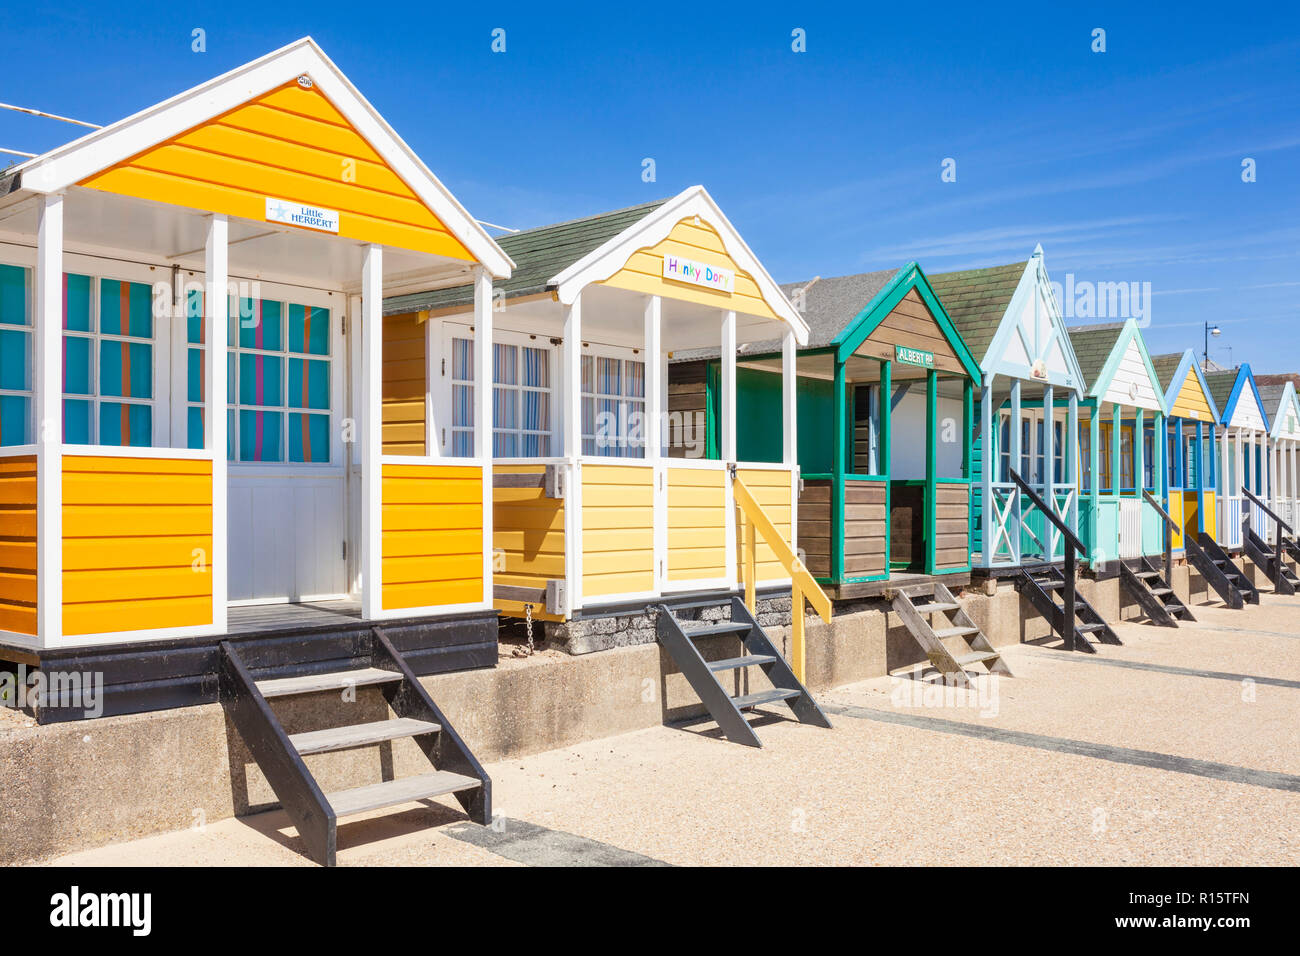 Cabines de plage de Southwold peint de couleurs vives, des cabines de plage plage de Southwold North Parade East Anglia Suffolk Southwold England UK GO Europe Banque D'Images